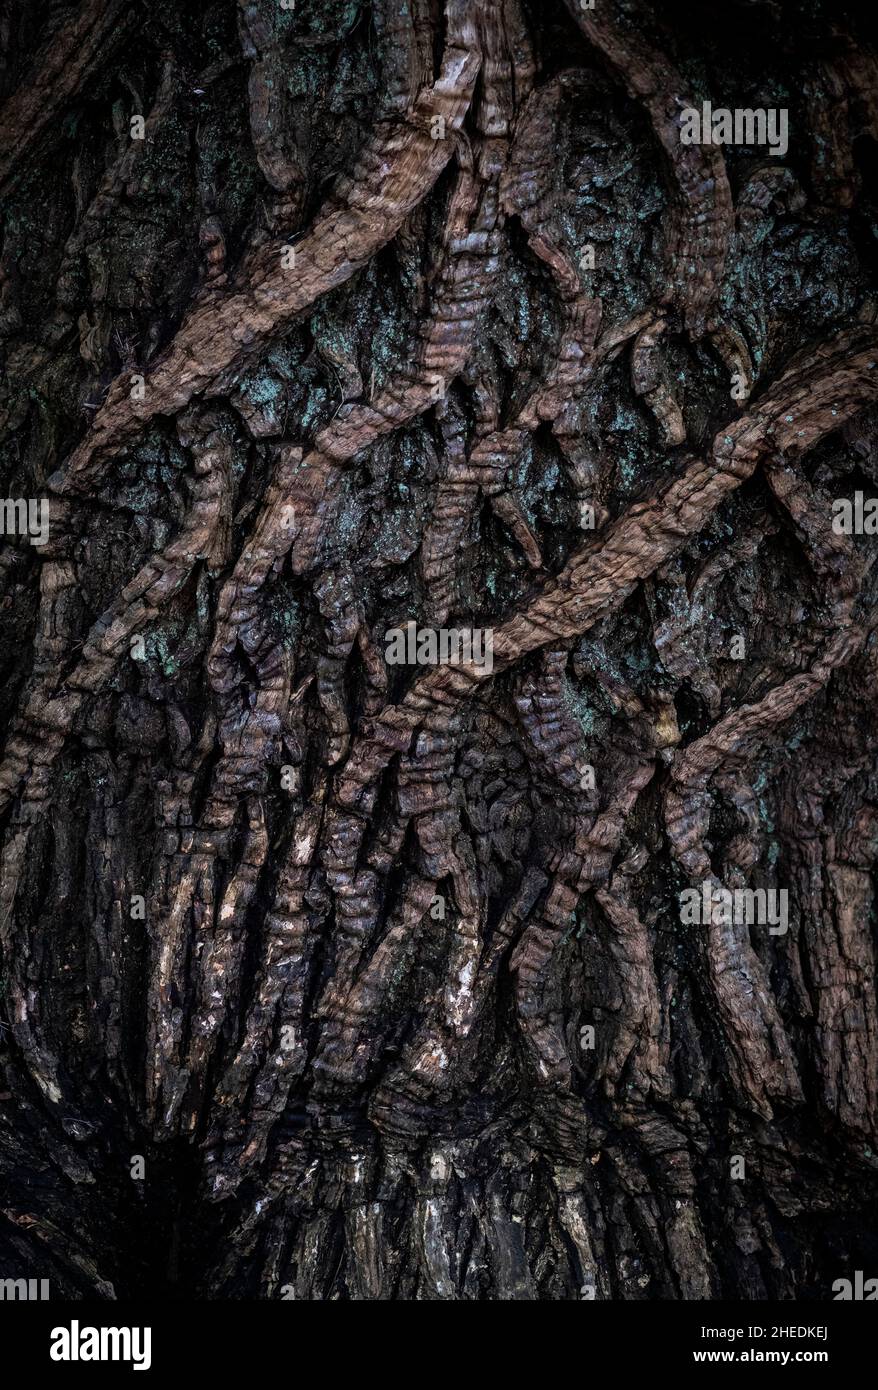 Giorni bui di inverno, ma la tessitura della corteccia su alberi antichi mostra attraverso il buio ed è la prova dei molti inverni che l'albero ha visto. Foto Stock